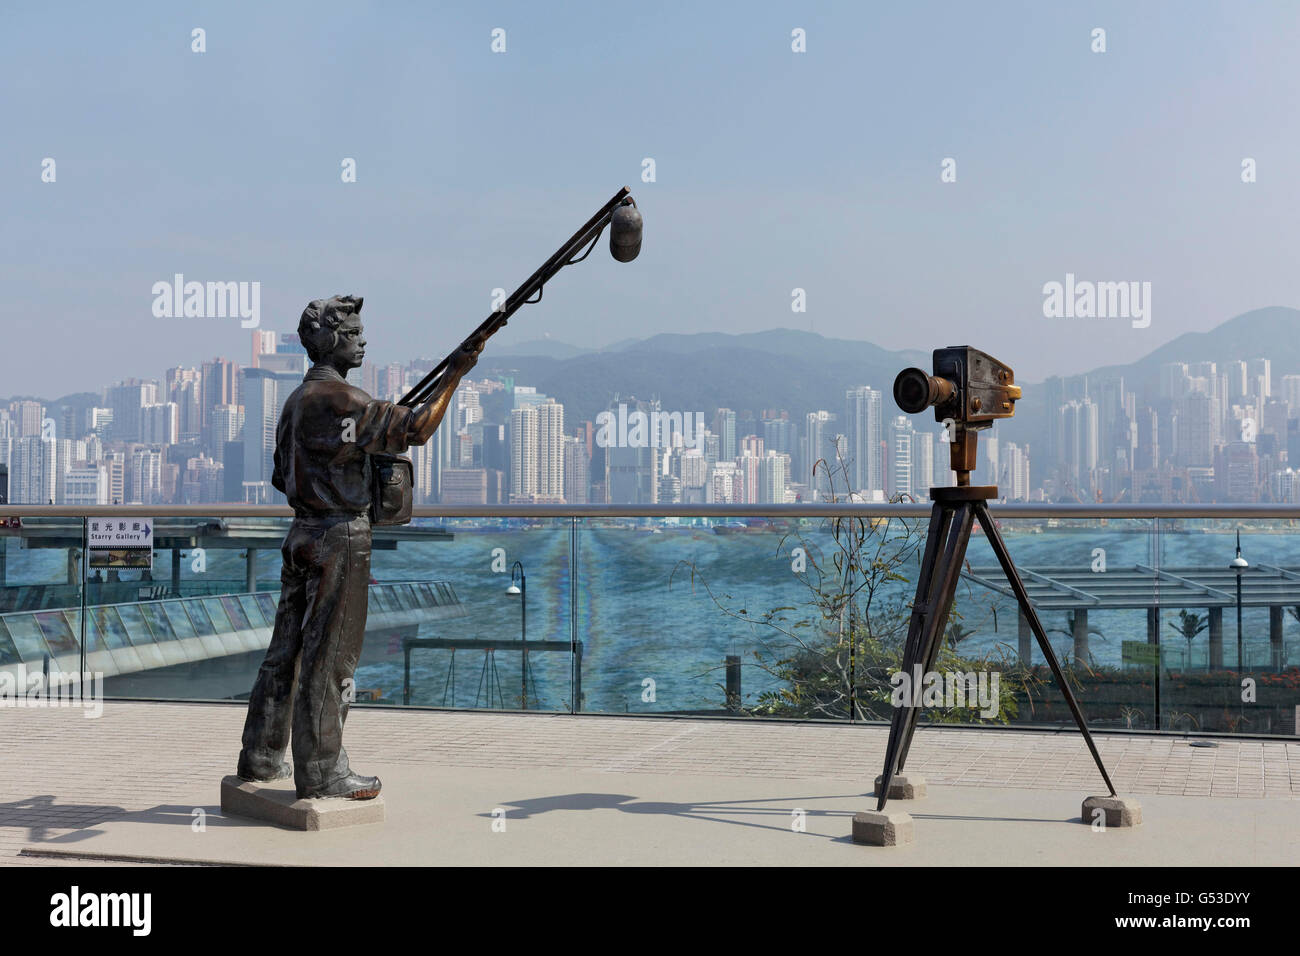 Asistente de sonido y cámara de cine, esculturas de bronce, la Avenida de las estrellas con vistas de la isla de Hong Kong, Tsim Sha Tsui, Kowloon Foto de stock